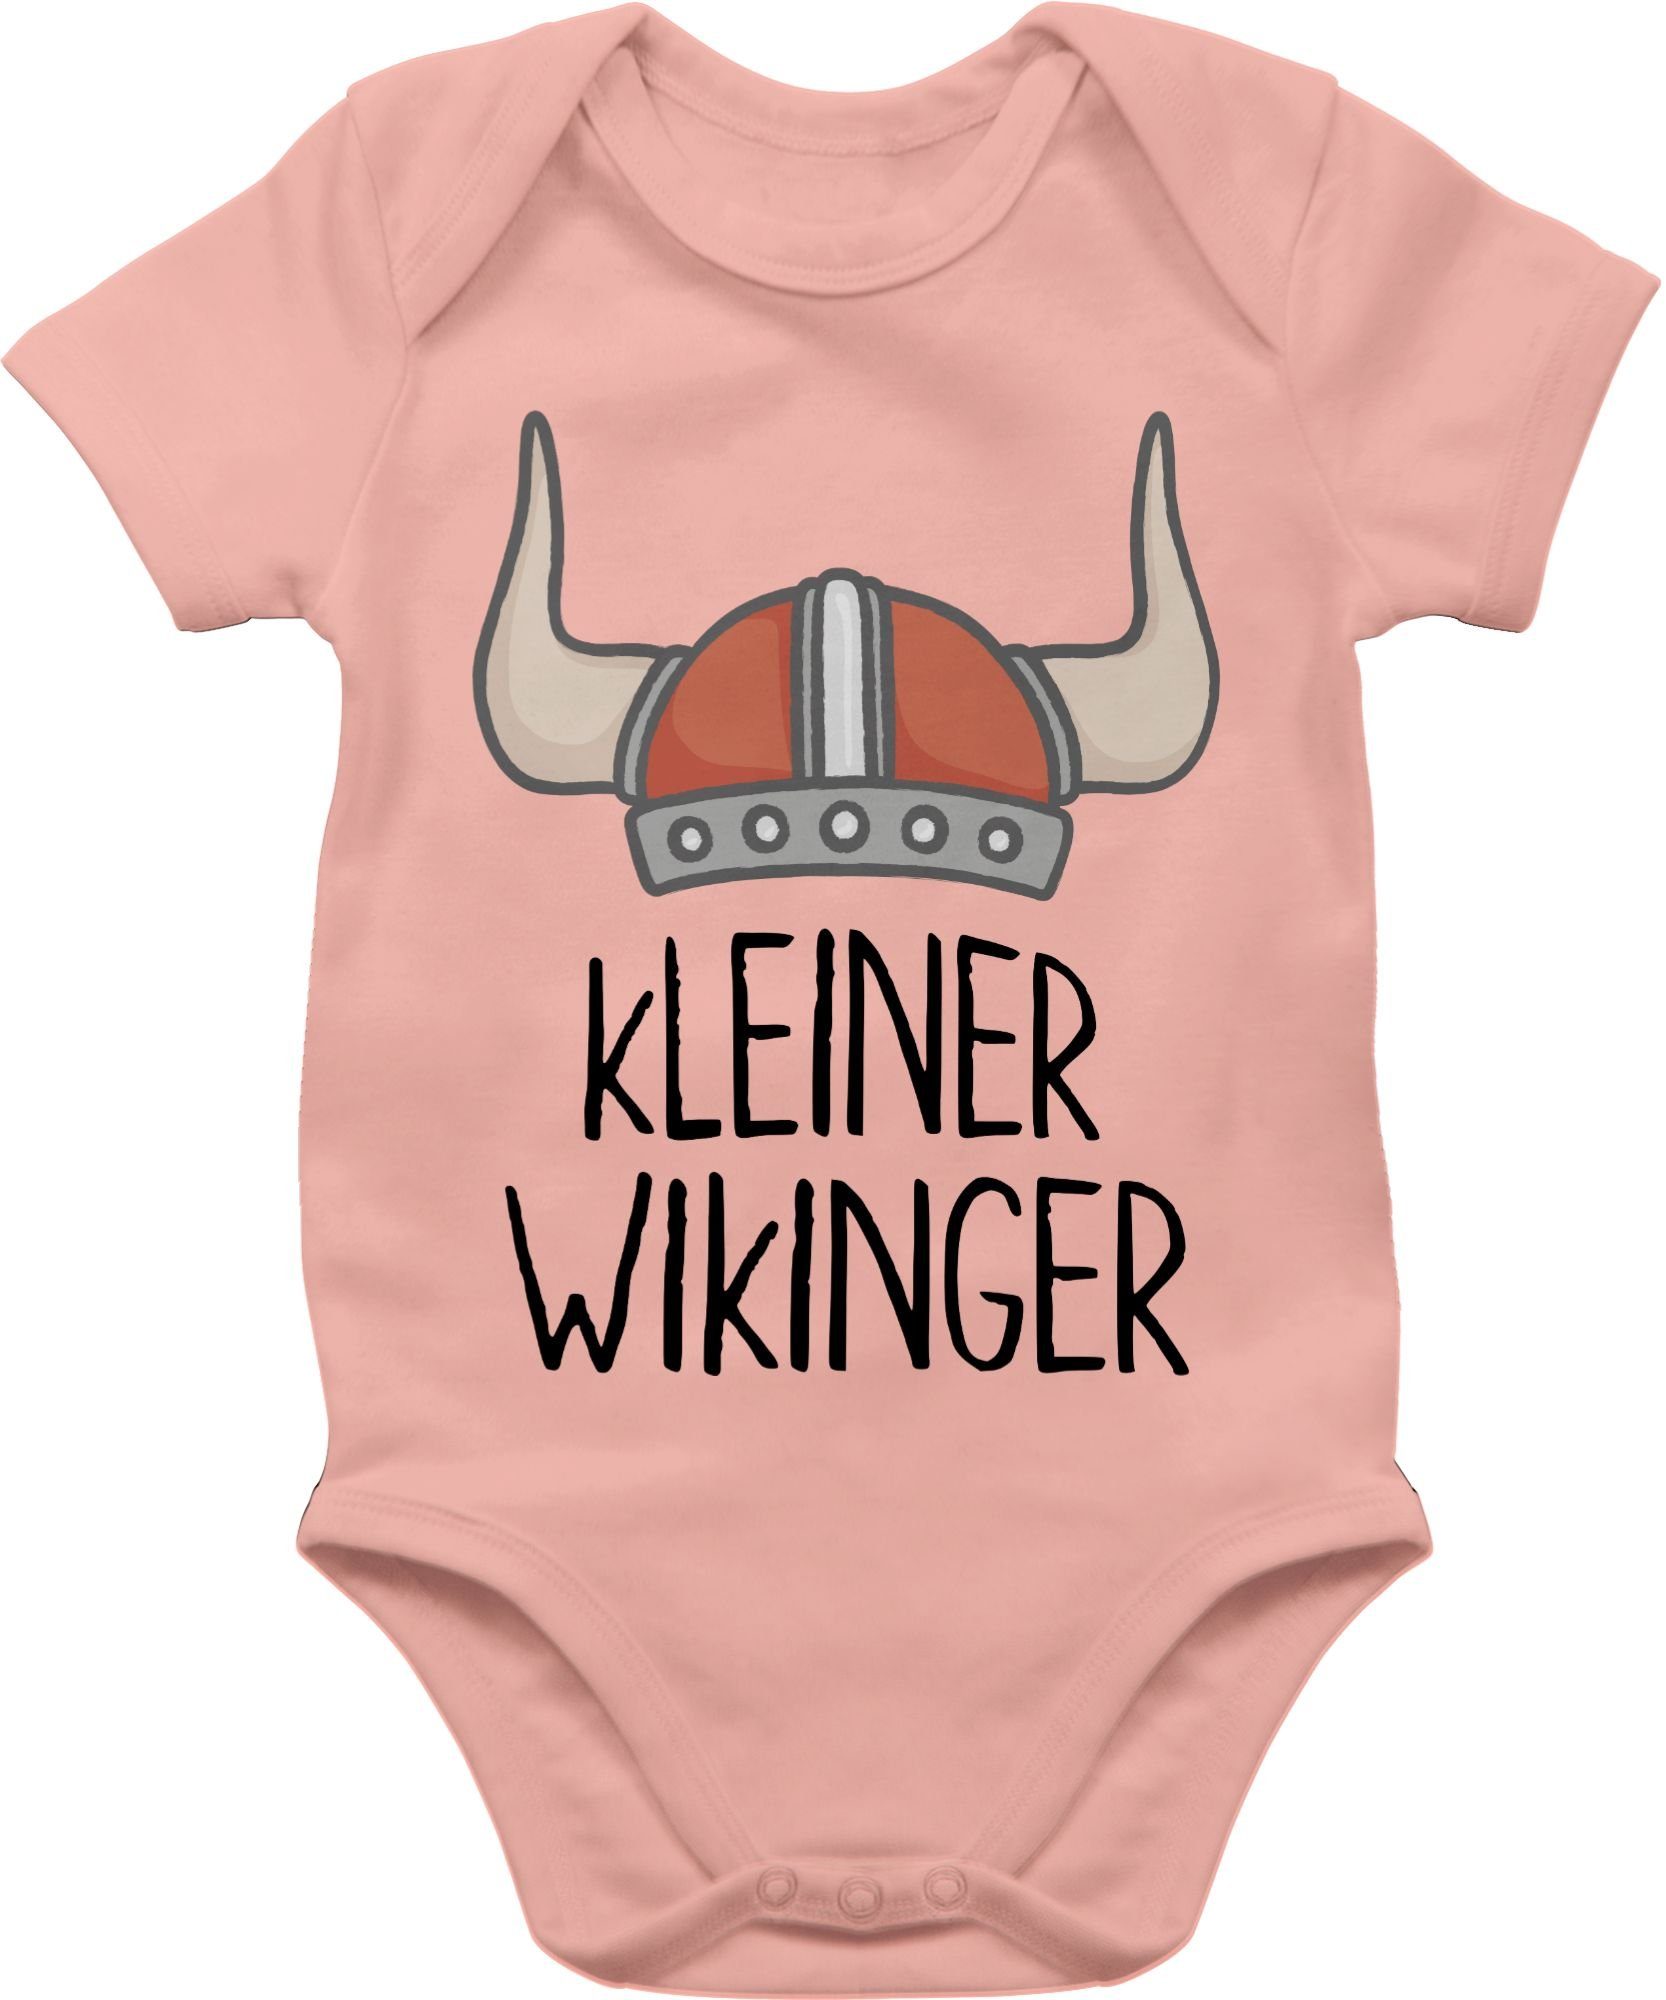 & Wikinger Walhalla Babyrosa Wikinger Baby Shirtbody Shirtracer 2 kleiner